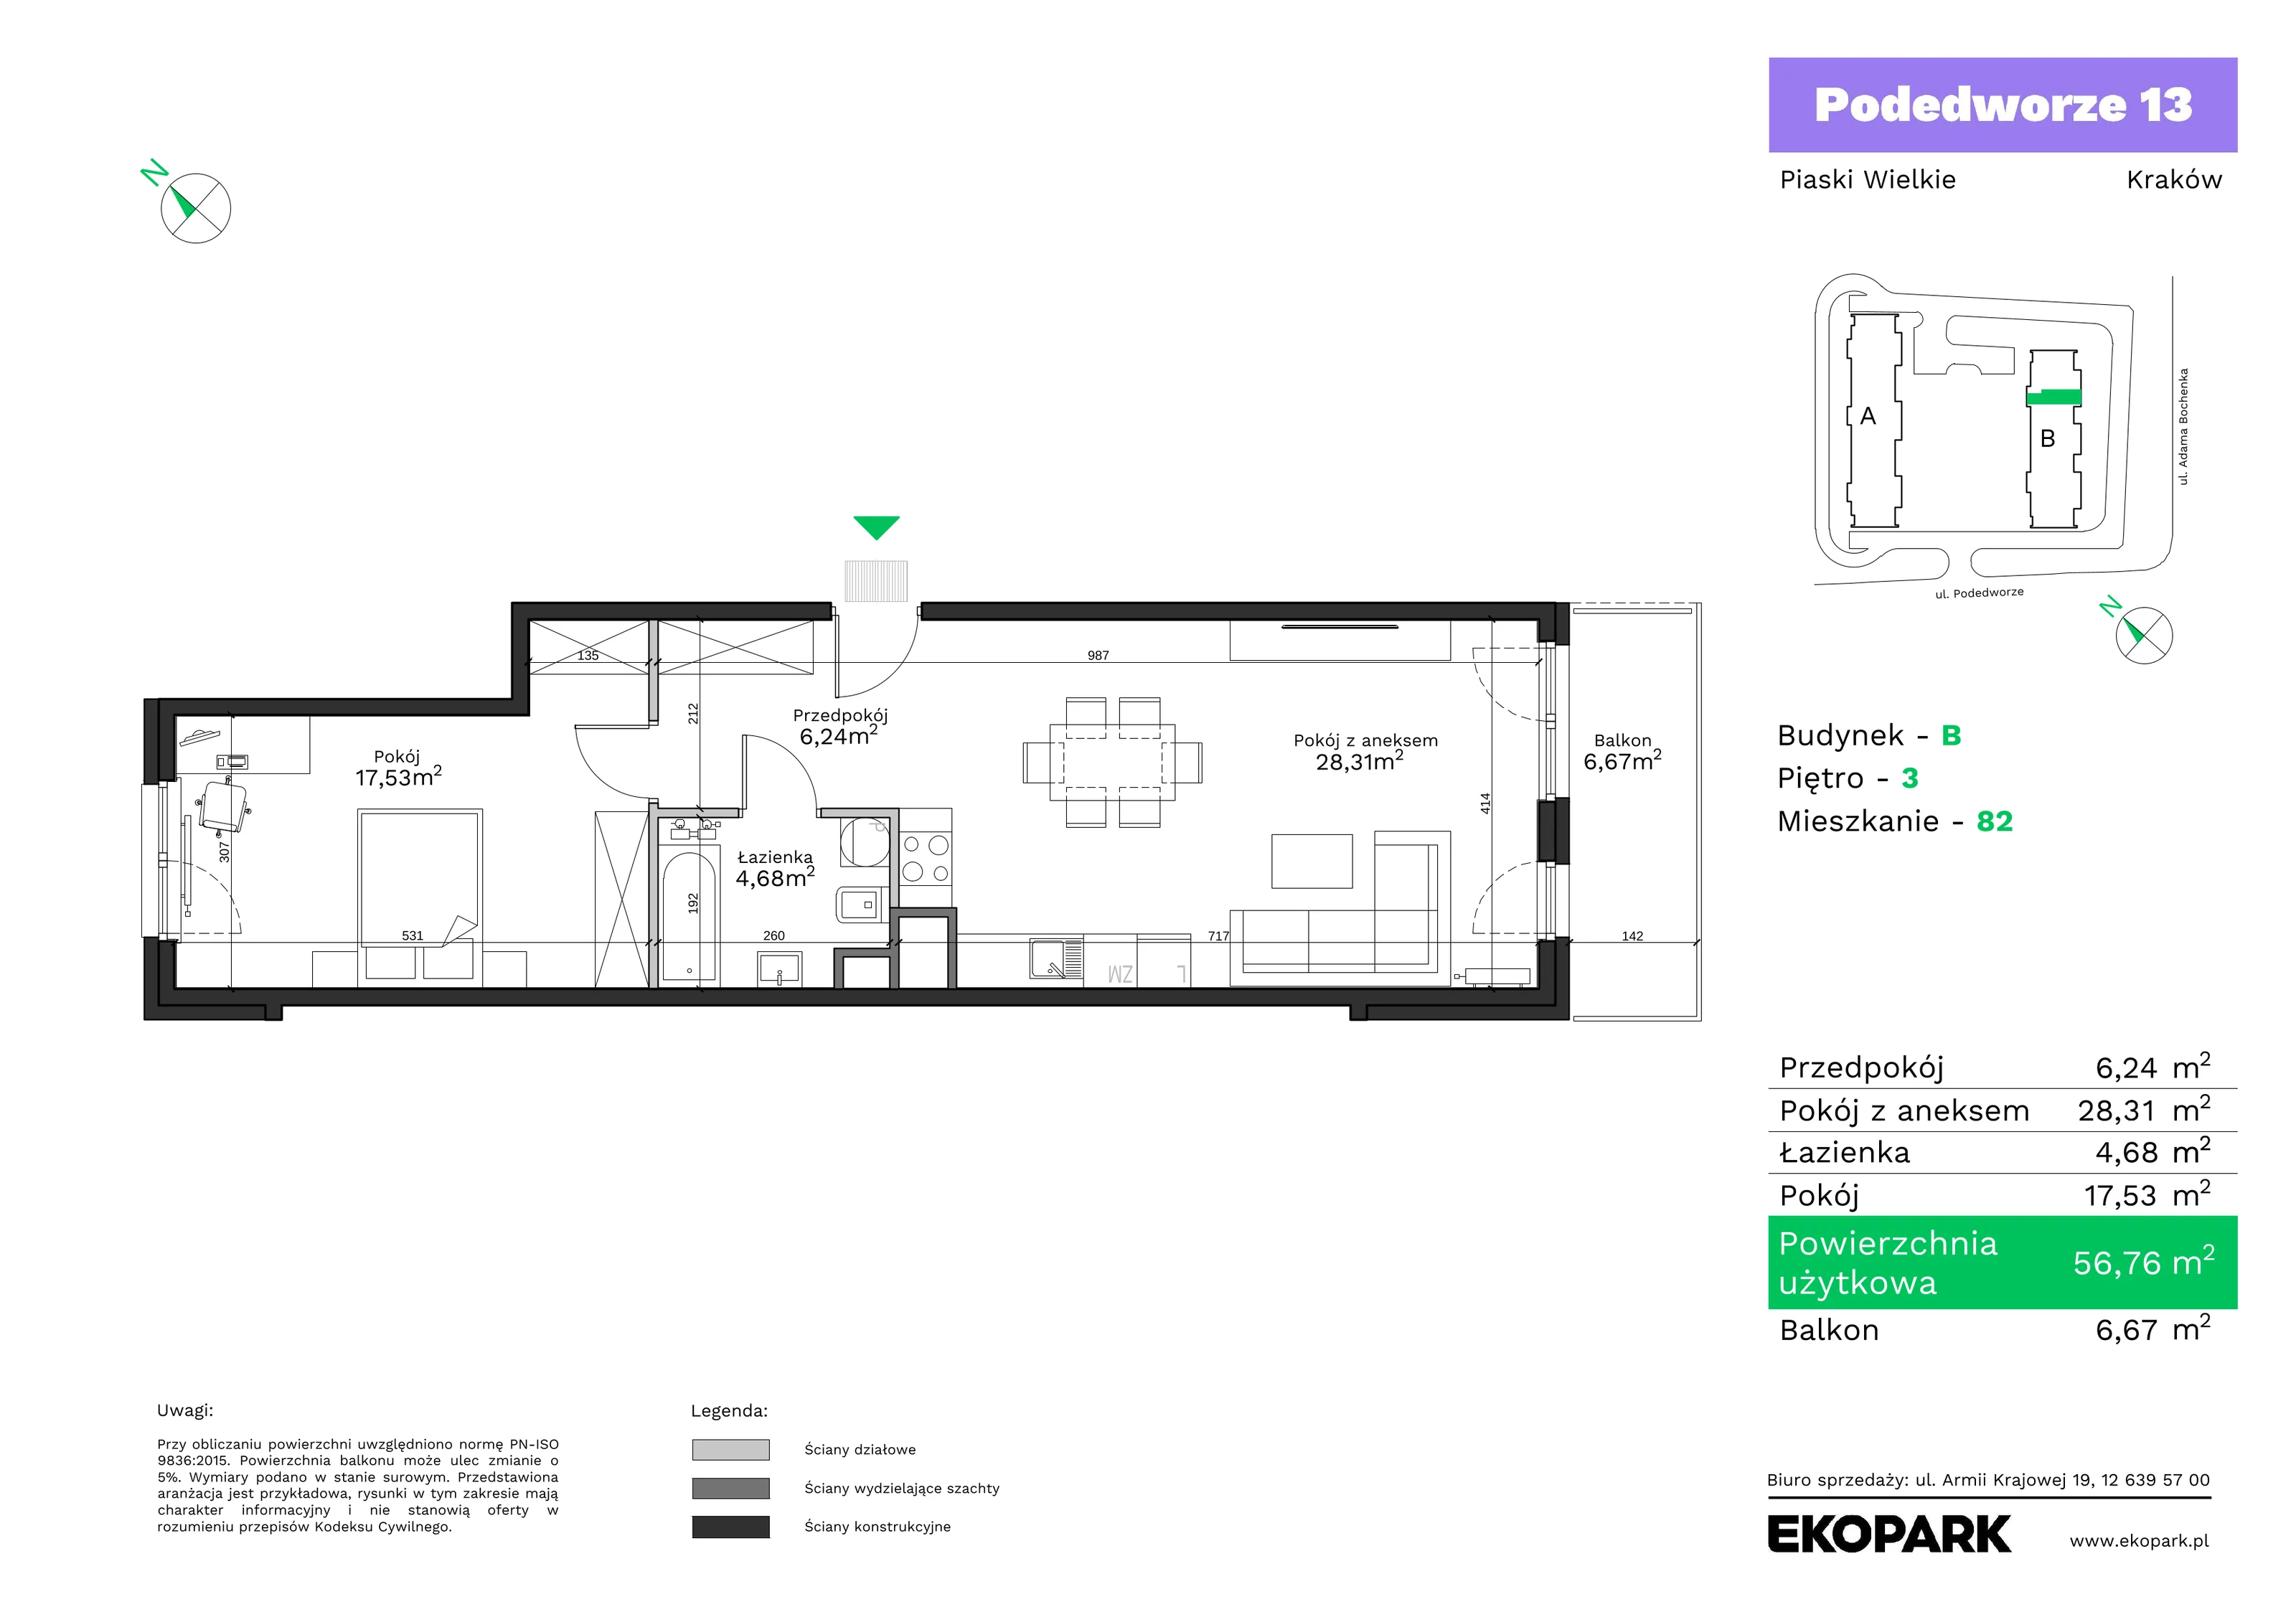 Mieszkanie 56,76 m², piętro 3, oferta nr B82, Podedworze 13, Kraków, Podgórze Duchackie, Piaski Wielkie, ul. Podedworze 13